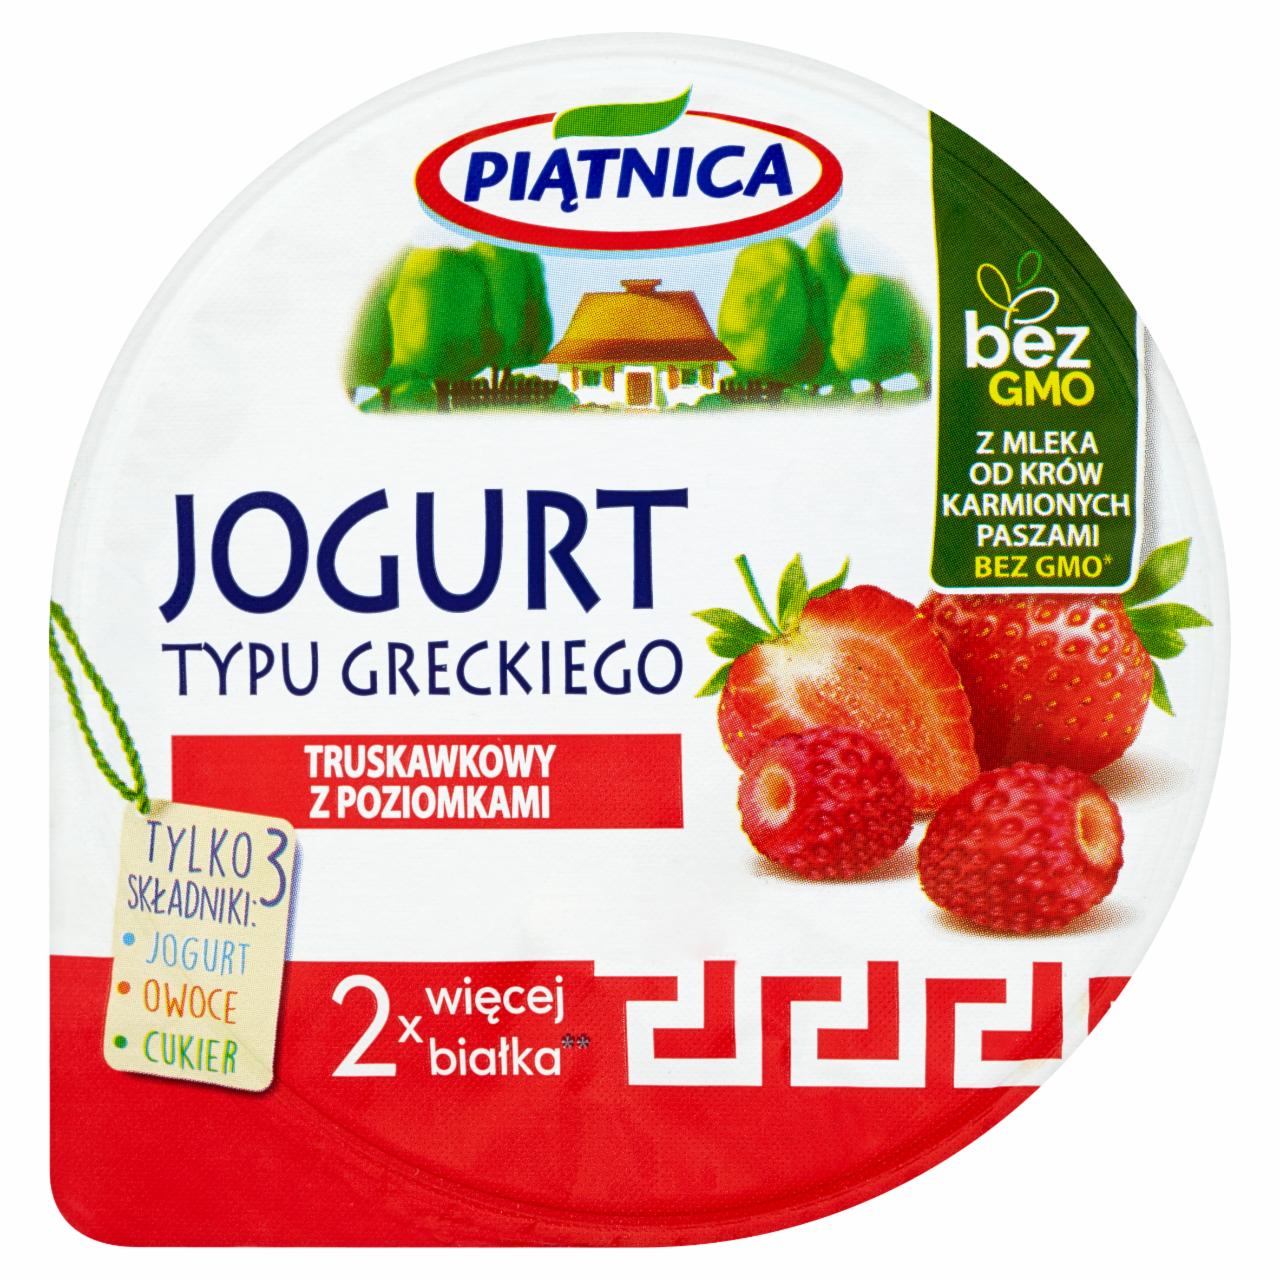 Zdjęcia - Piątnica Jogurt typu greckiego truskawkowy z poziomkami 150 g